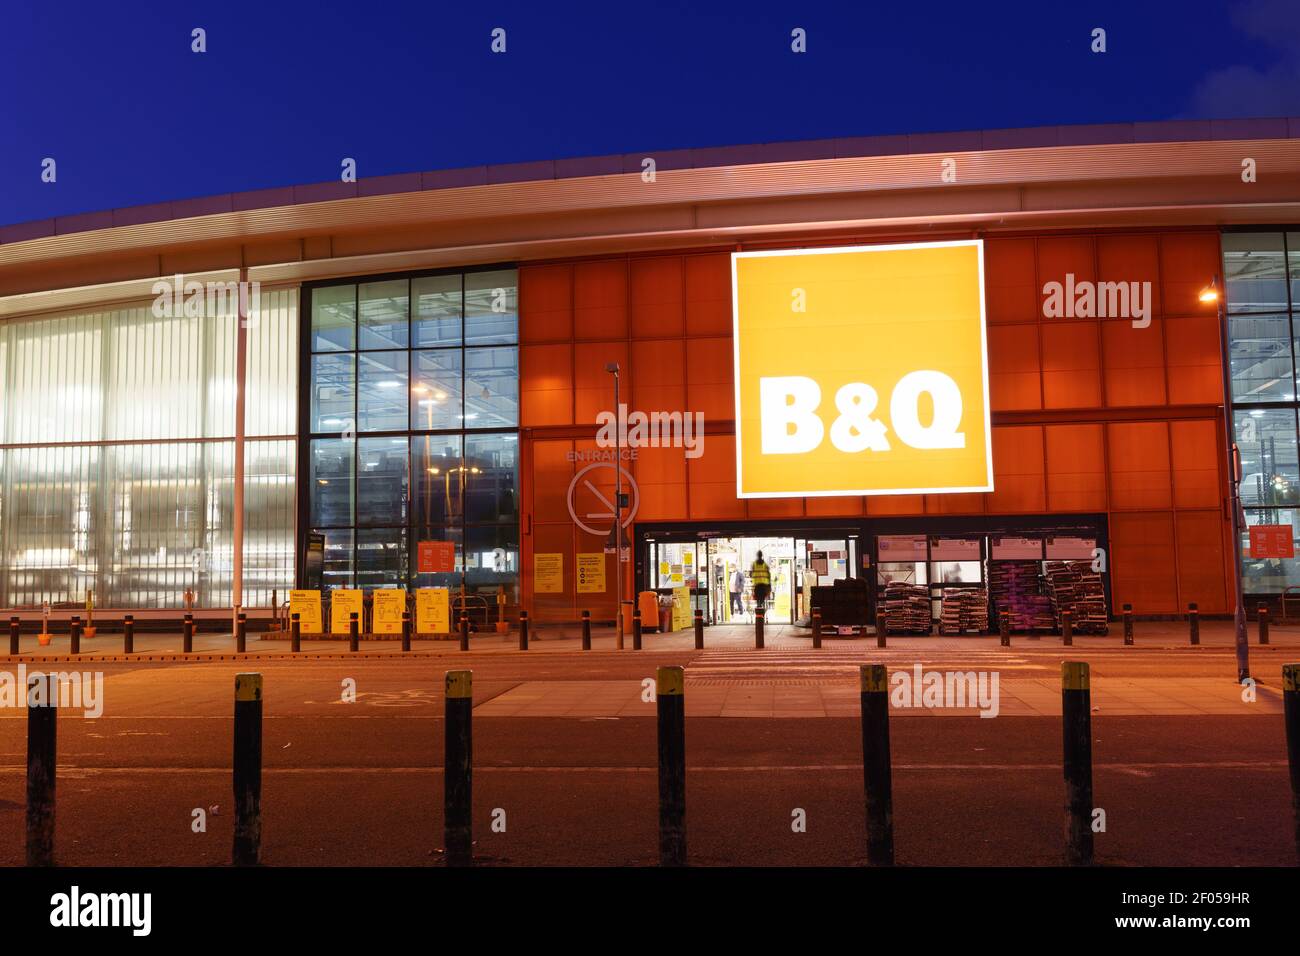 L'entrée du magasin B&Q est éclairée aux heures de magasinage du soir à Londres, avec des lettres blanches sur fond orange Banque D'Images